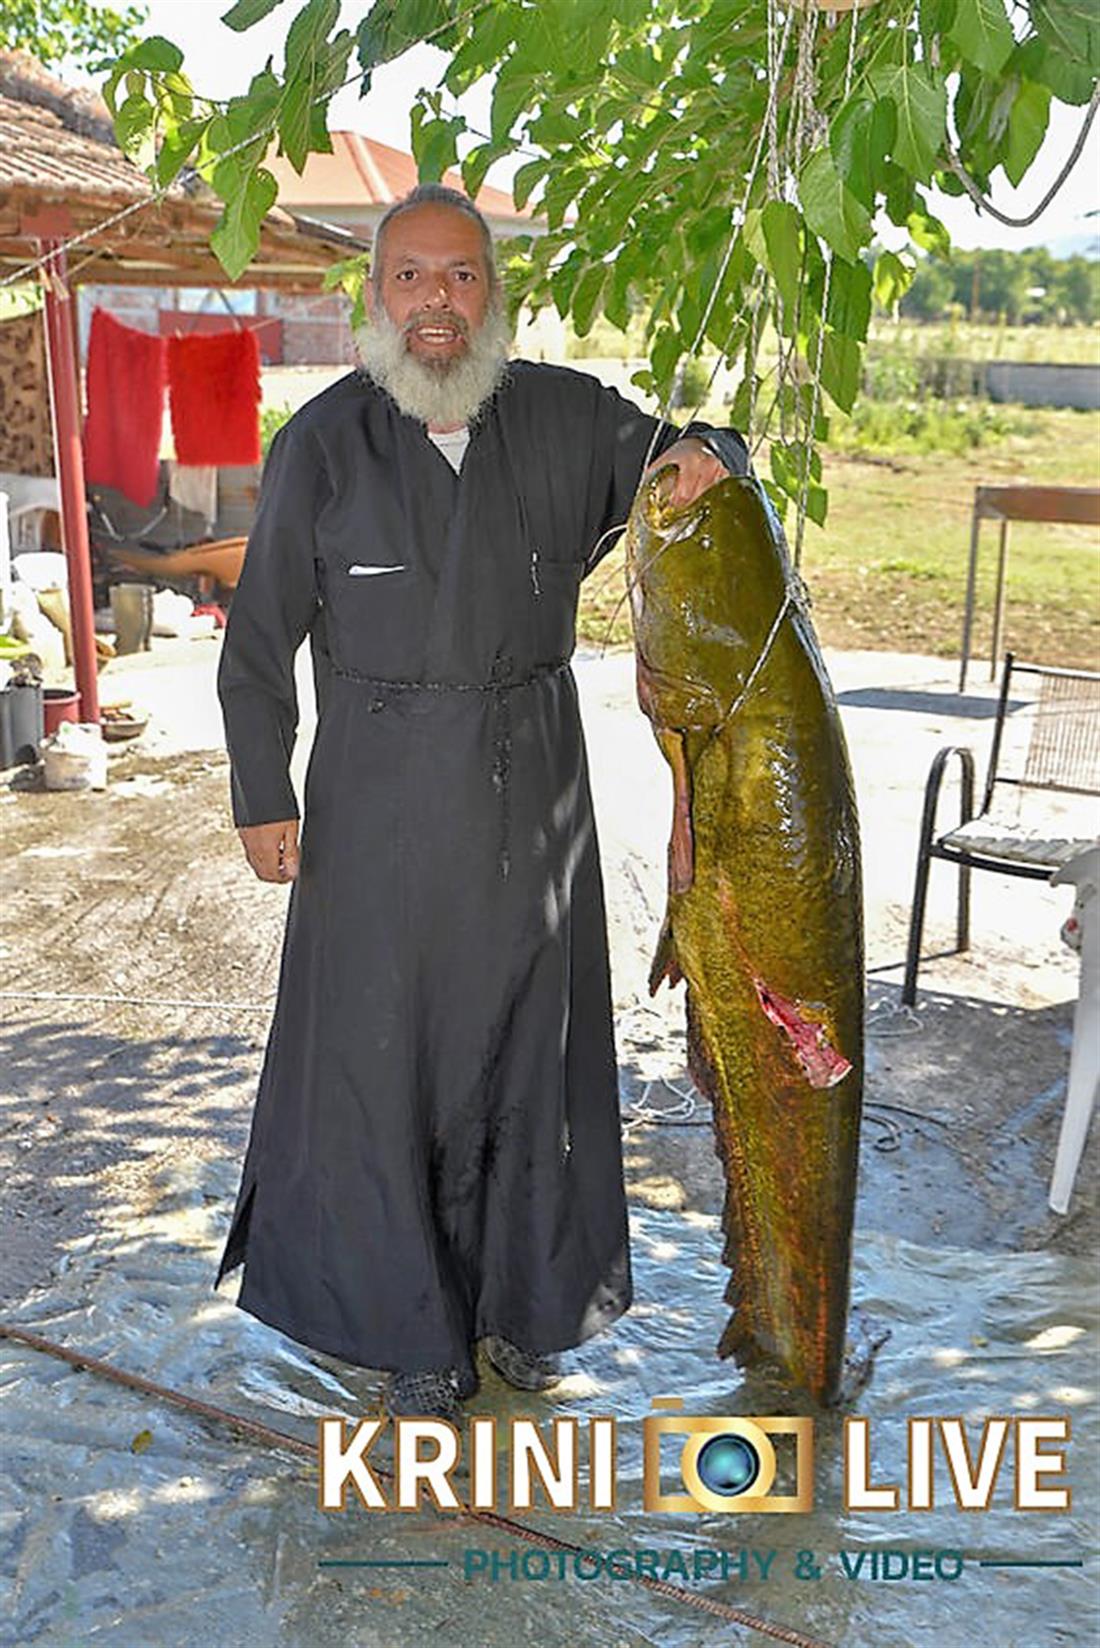 Ψάρι - 35 κιλά - Πηνειός ποταμός - Τρίκαλα